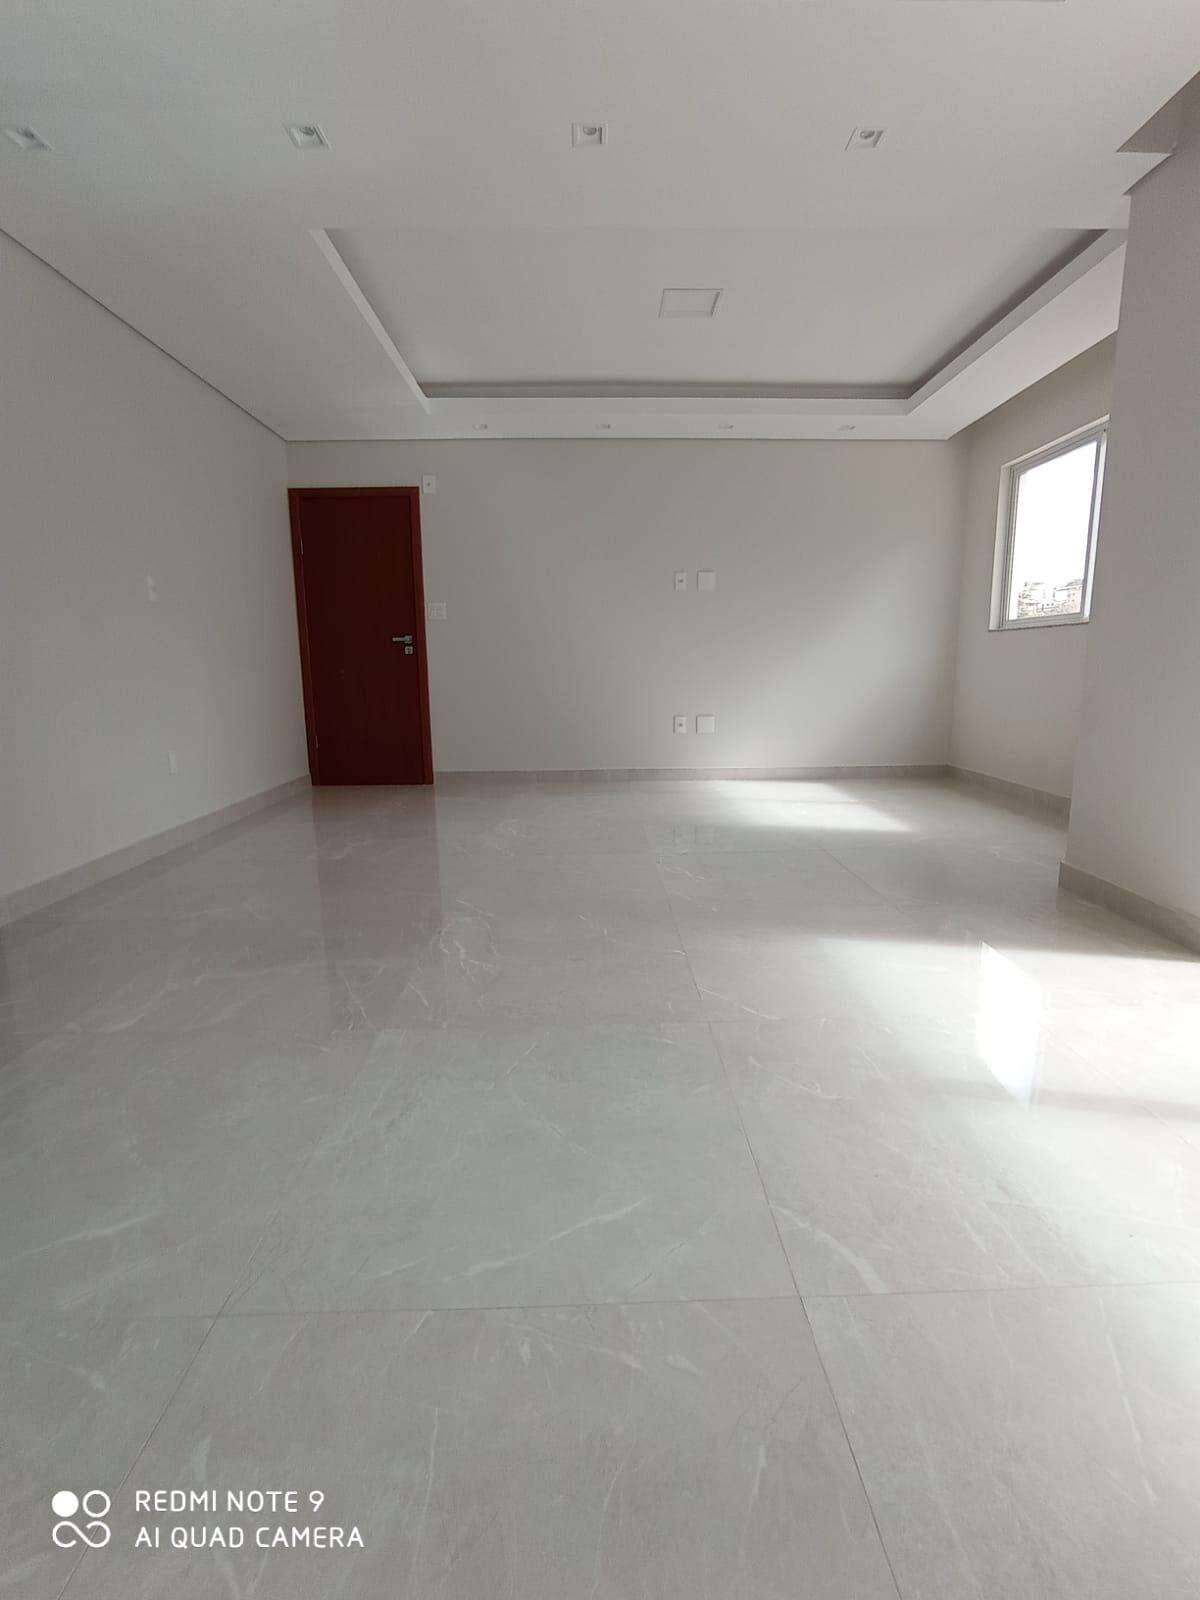 Apartamento 3 quartos à venda no Rafael José de Lima: d145aede-2-whatsapp-image-2023-06-05-at-12.51.59.jpeg